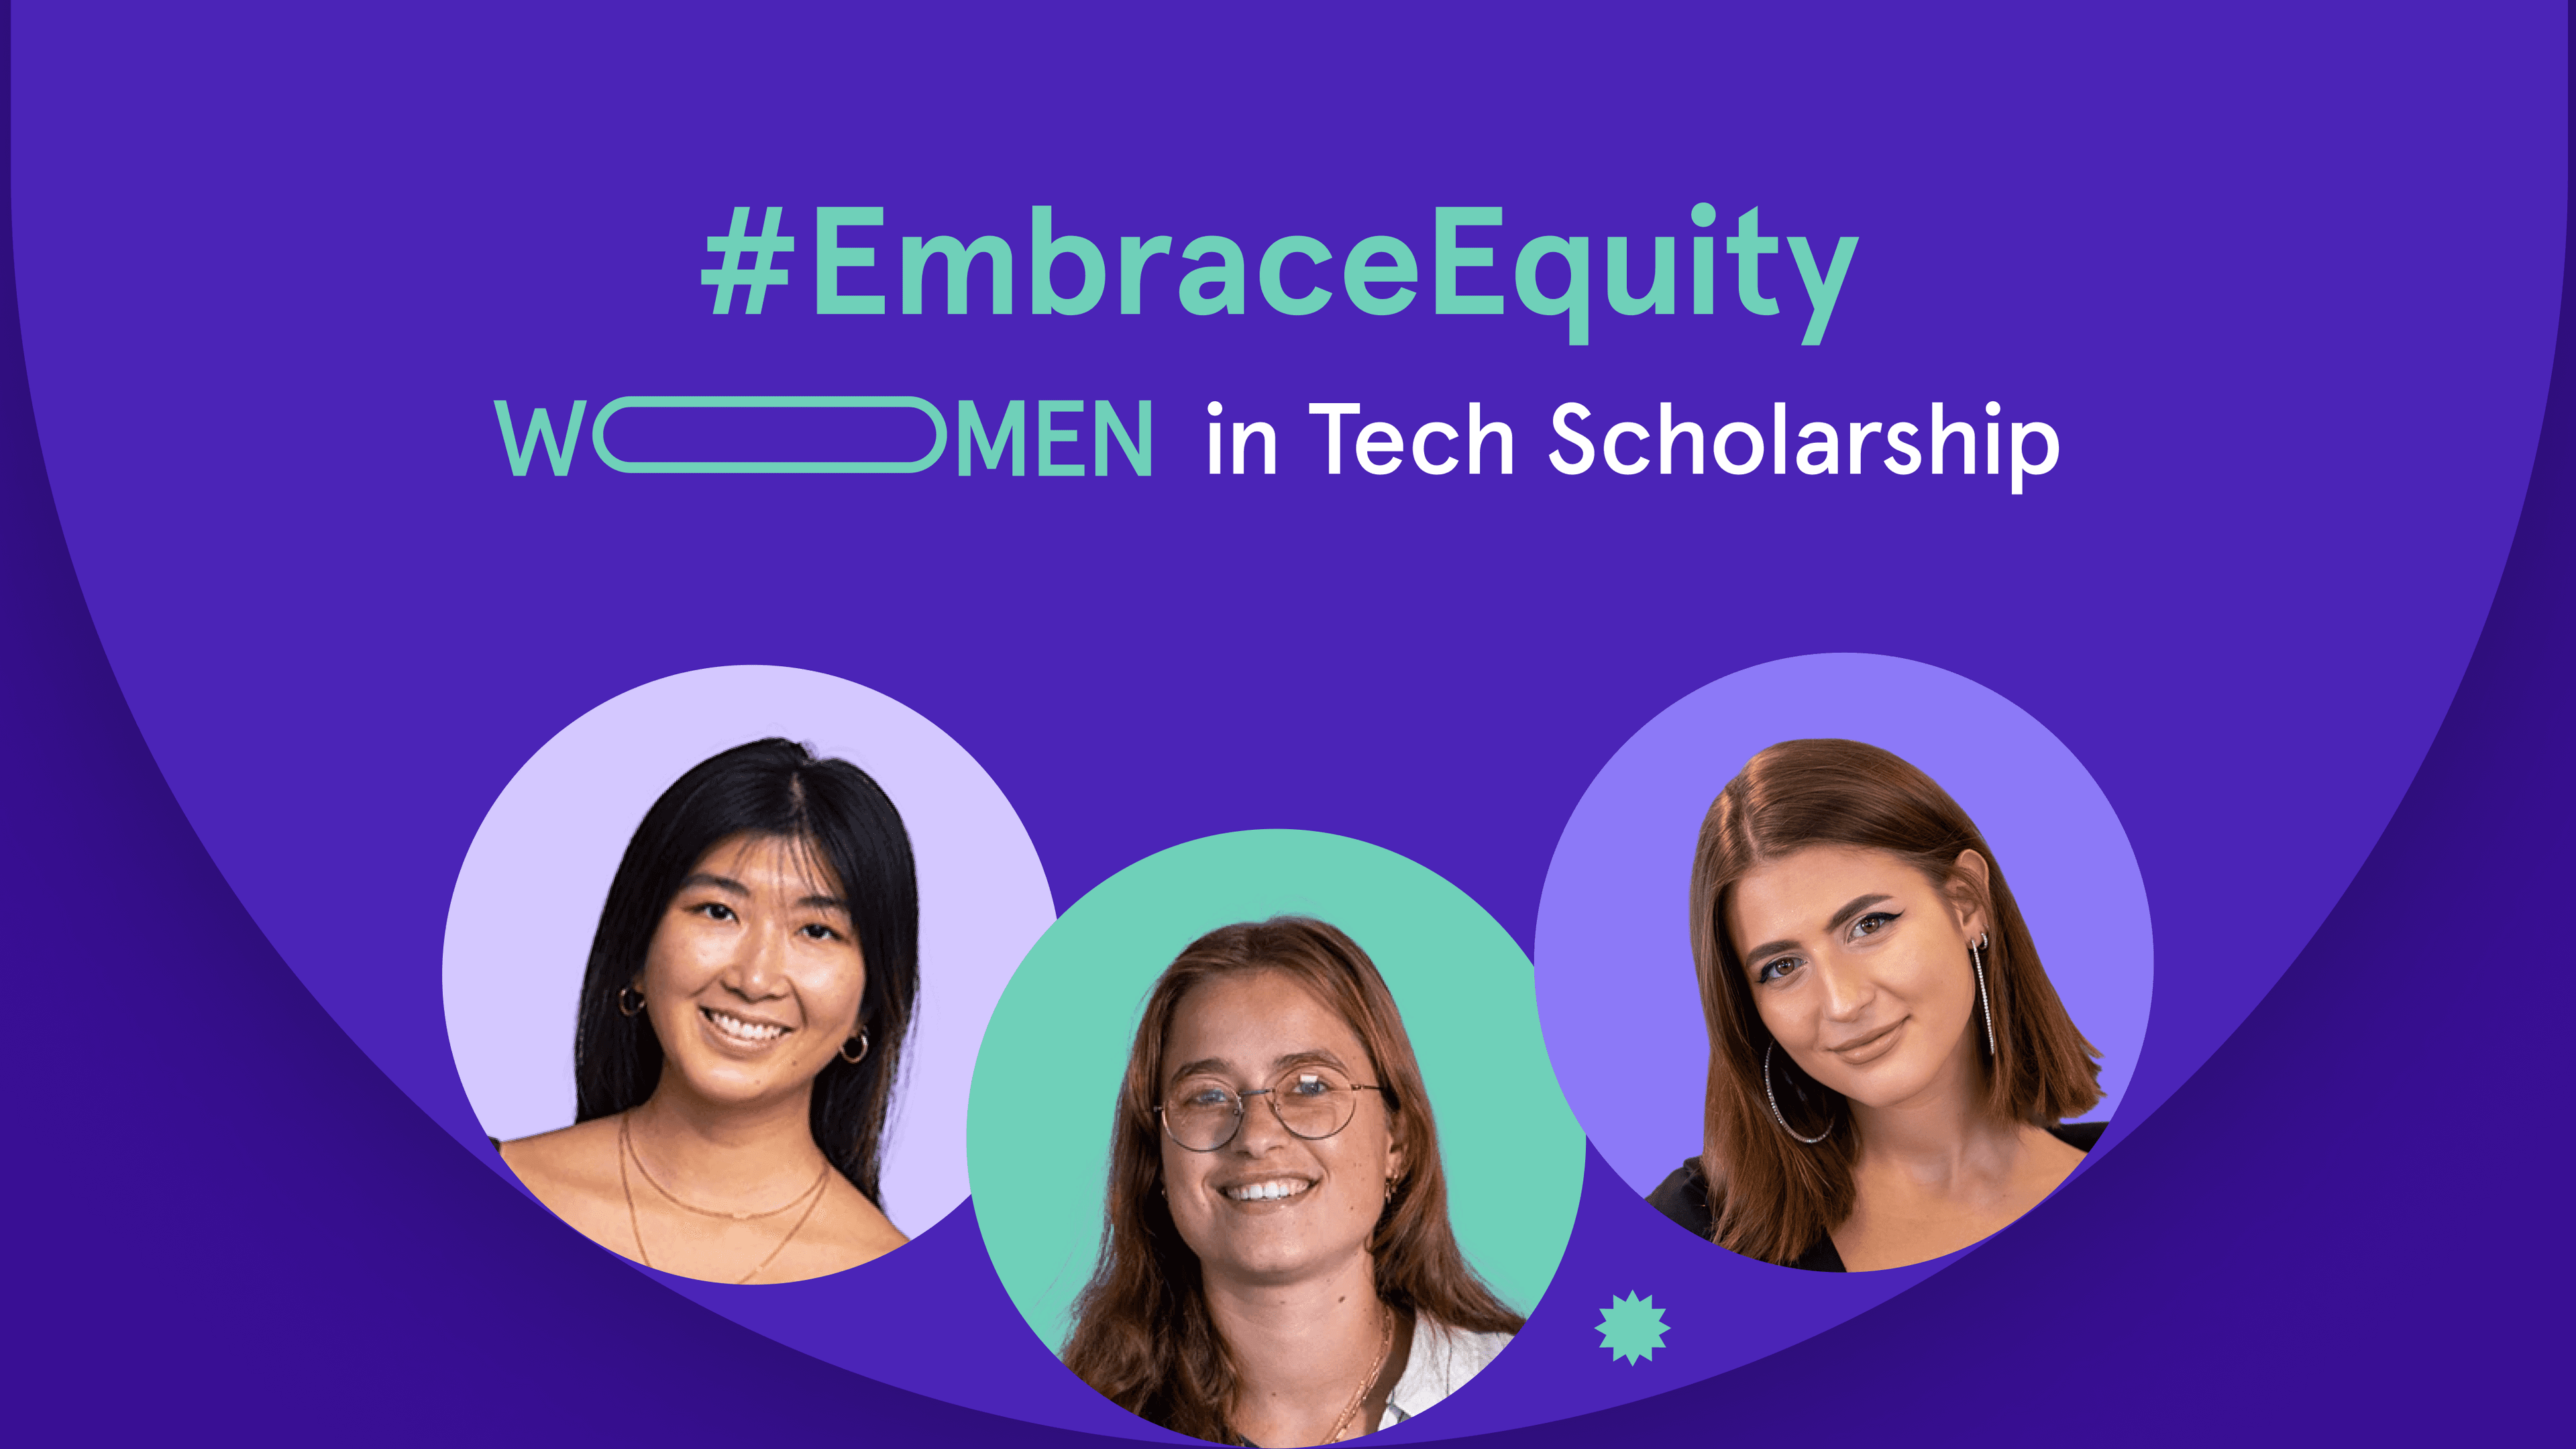 Women in Tech Scholarship to #EmbraceEquity